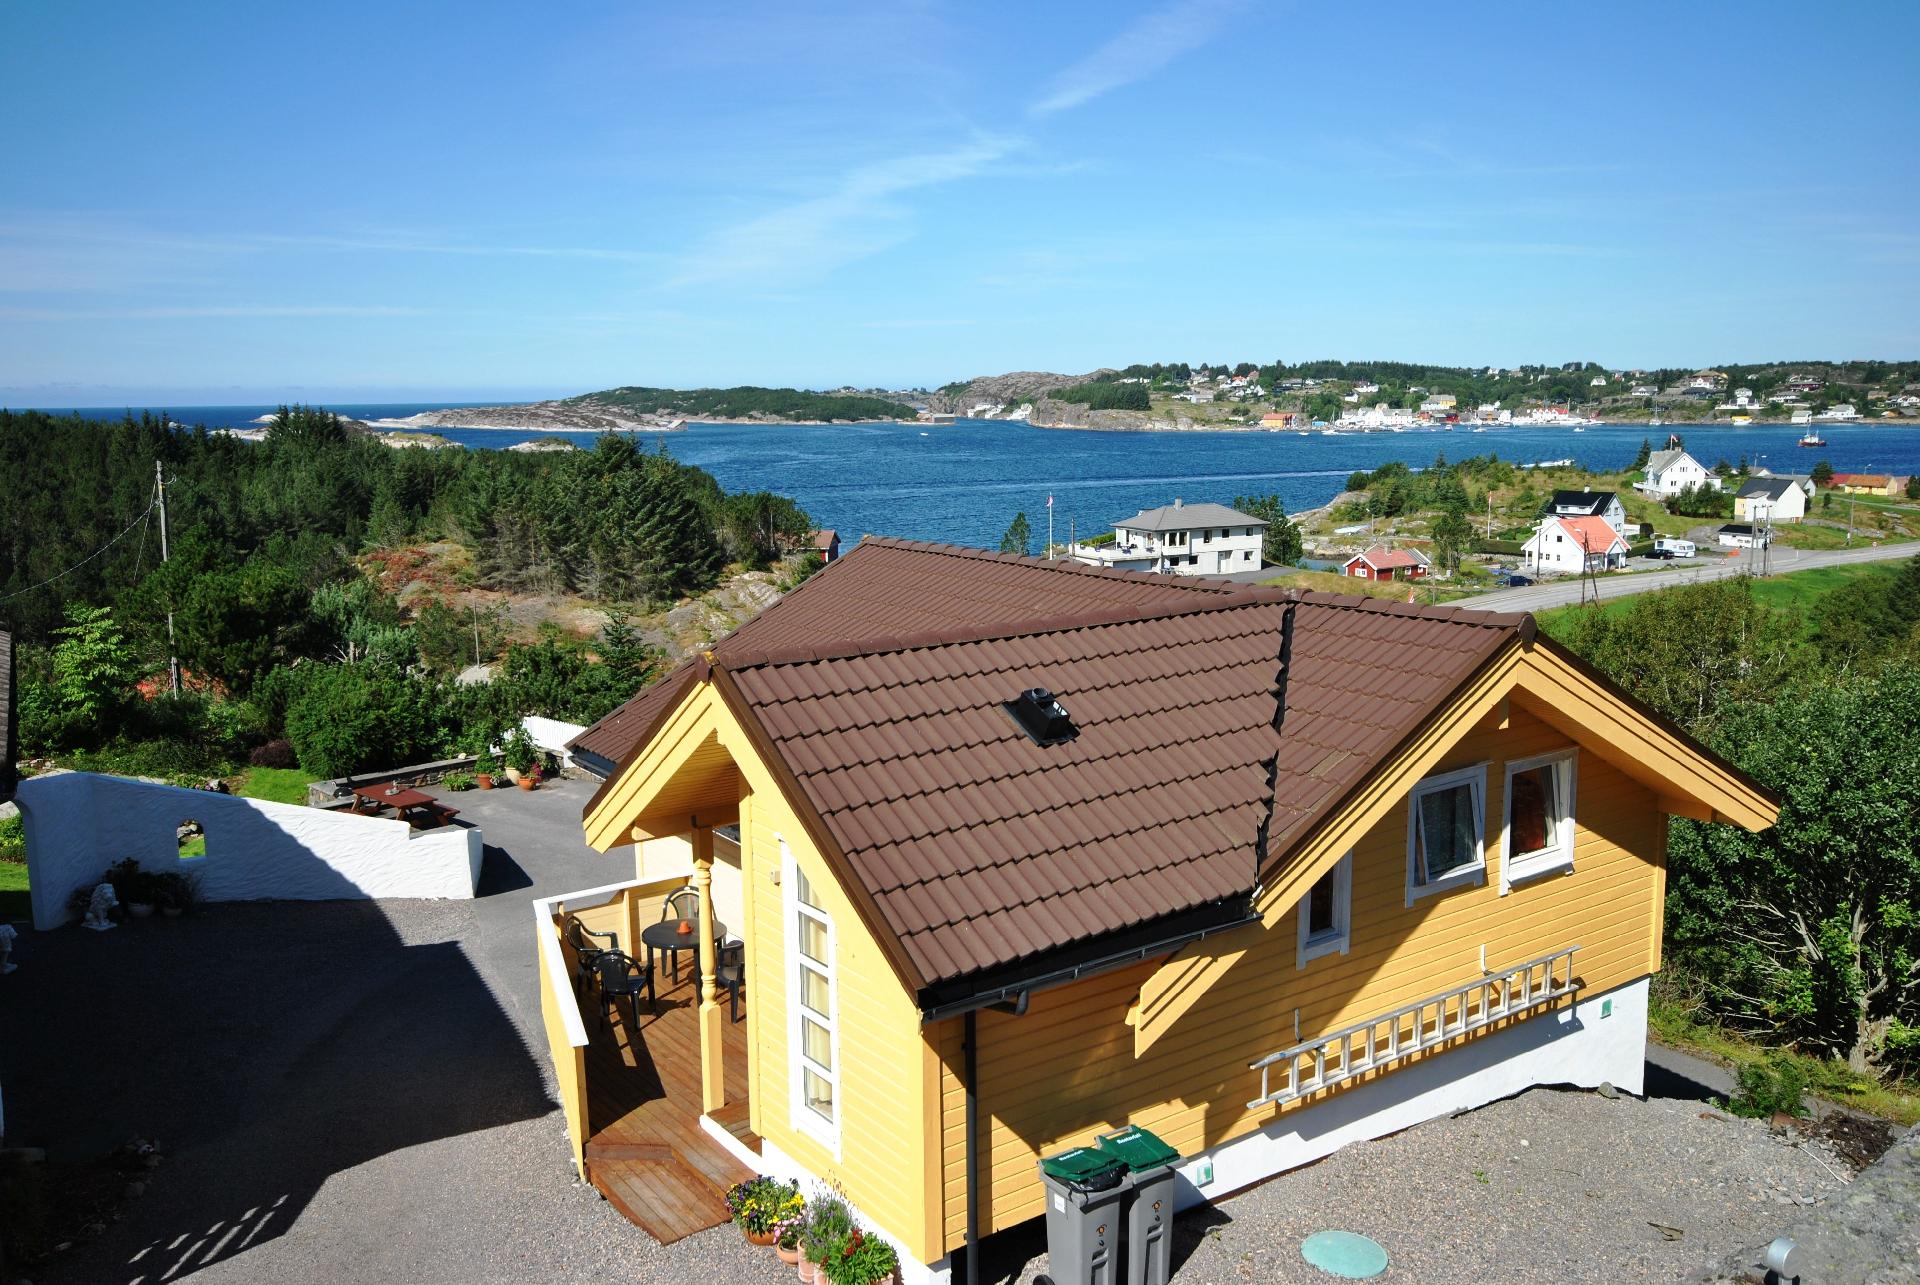 Gemütliches Ferienhaus mit Balkon und Garten  Ferienhaus in Europa